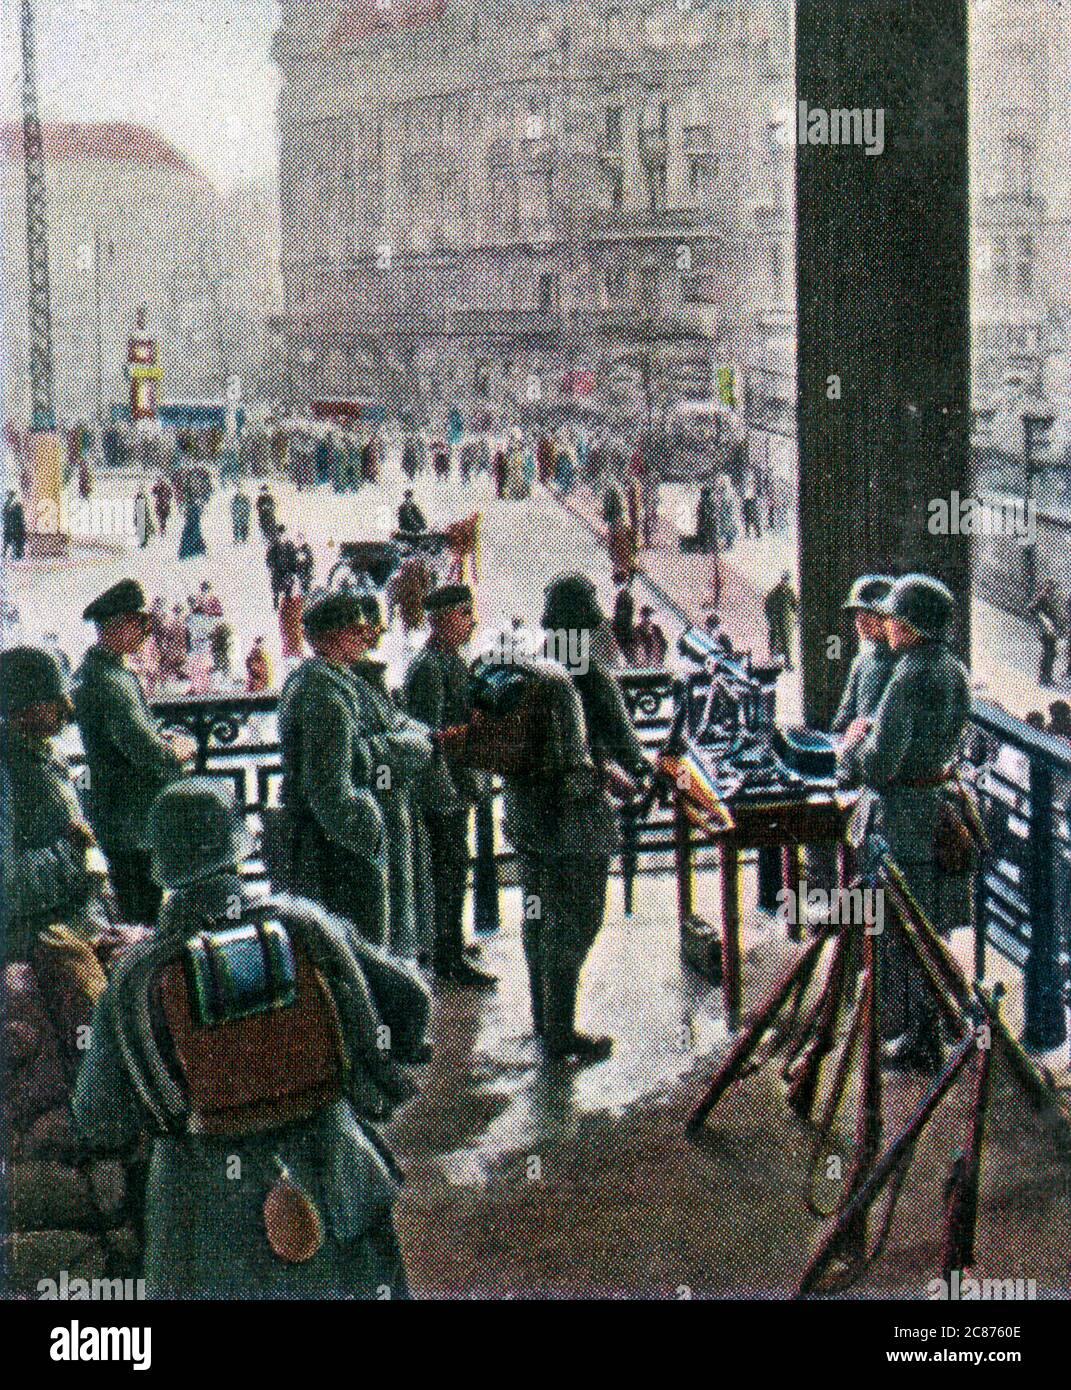 El fracasado golpe de la derecha de Kapp: Freikorps en la Potsdam Bahnhof Fecha: 17 de marzo de 1920 Foto de stock